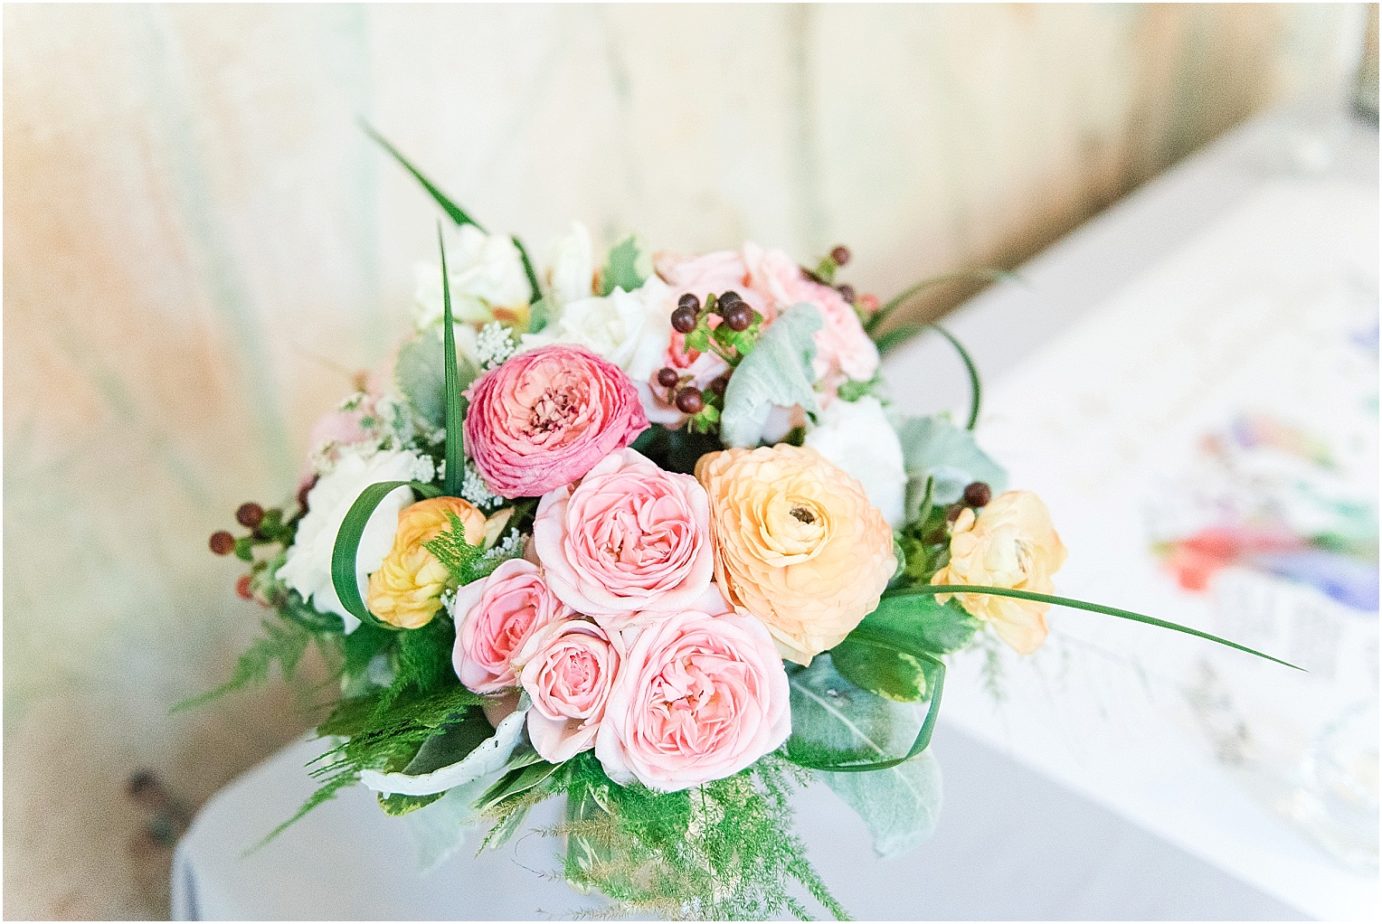 Best Wedding Bouquets of 2016 pale wedding florals